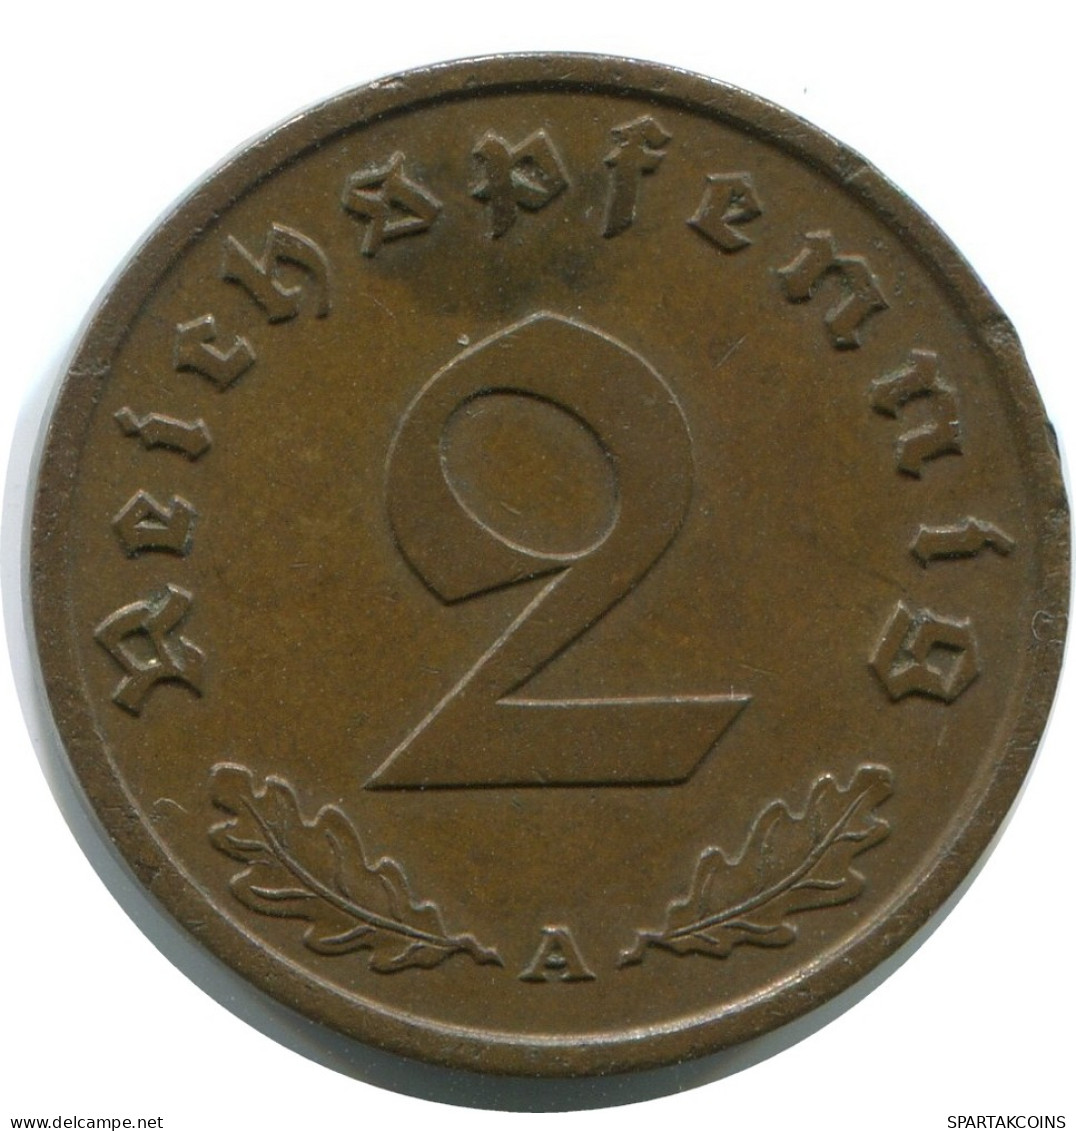 2 REICHSPFENNIG 1937 A DEUTSCHLAND Münze GERMANY #AD855.9.D - 2 Rentenpfennig & 2 Reichspfennig